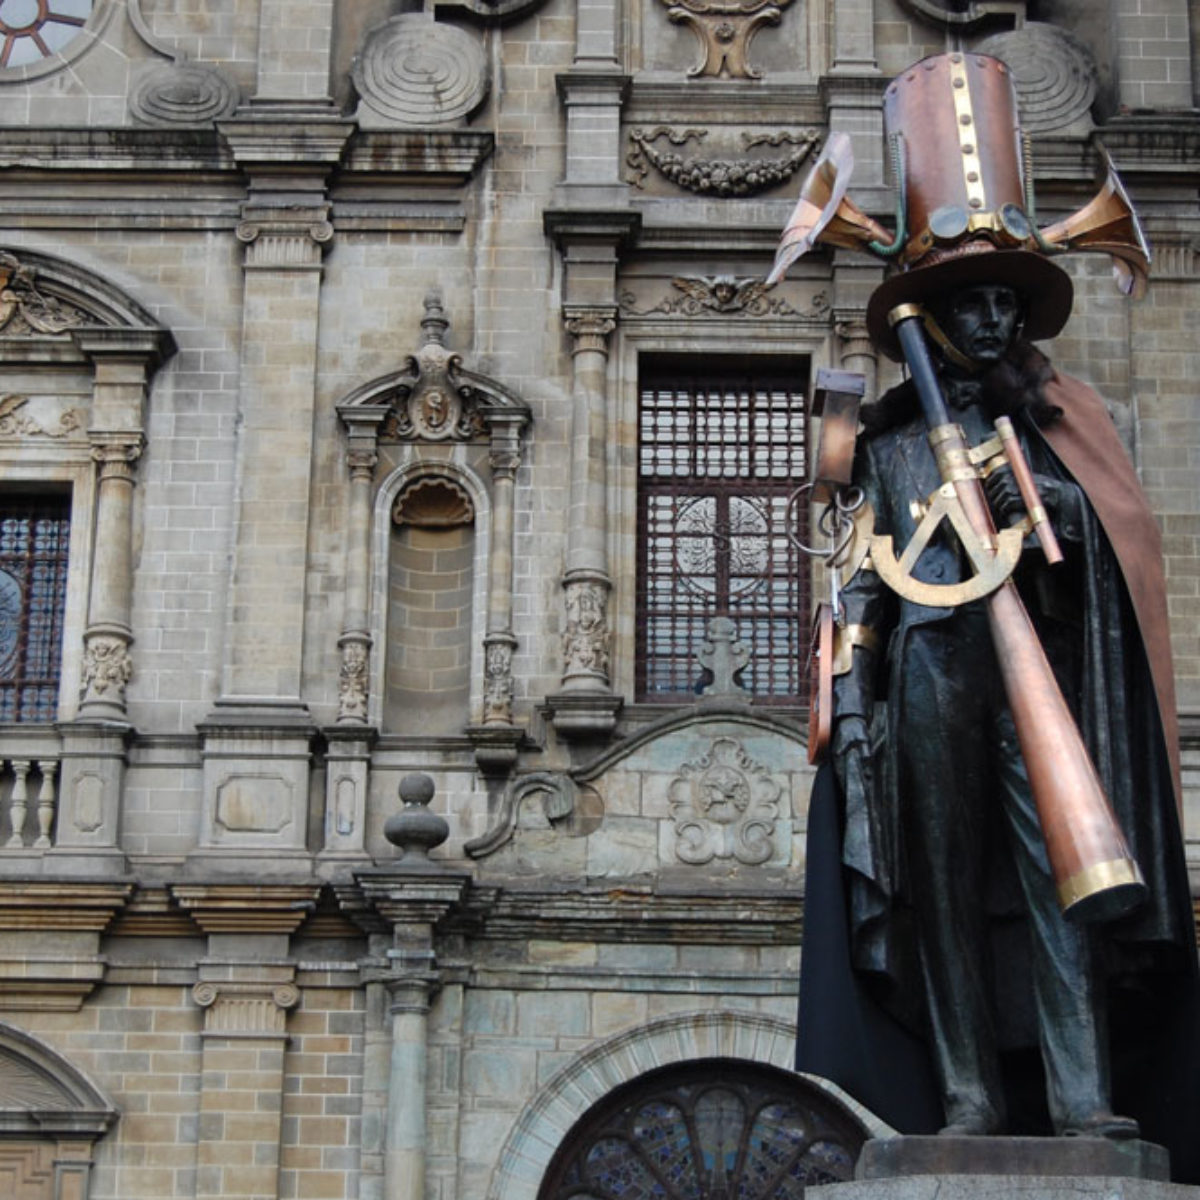 La escultura de Santander ubicada en la Plazuela San Ignacio en Medellín, intervenida con objetos Steampunk en 2015.